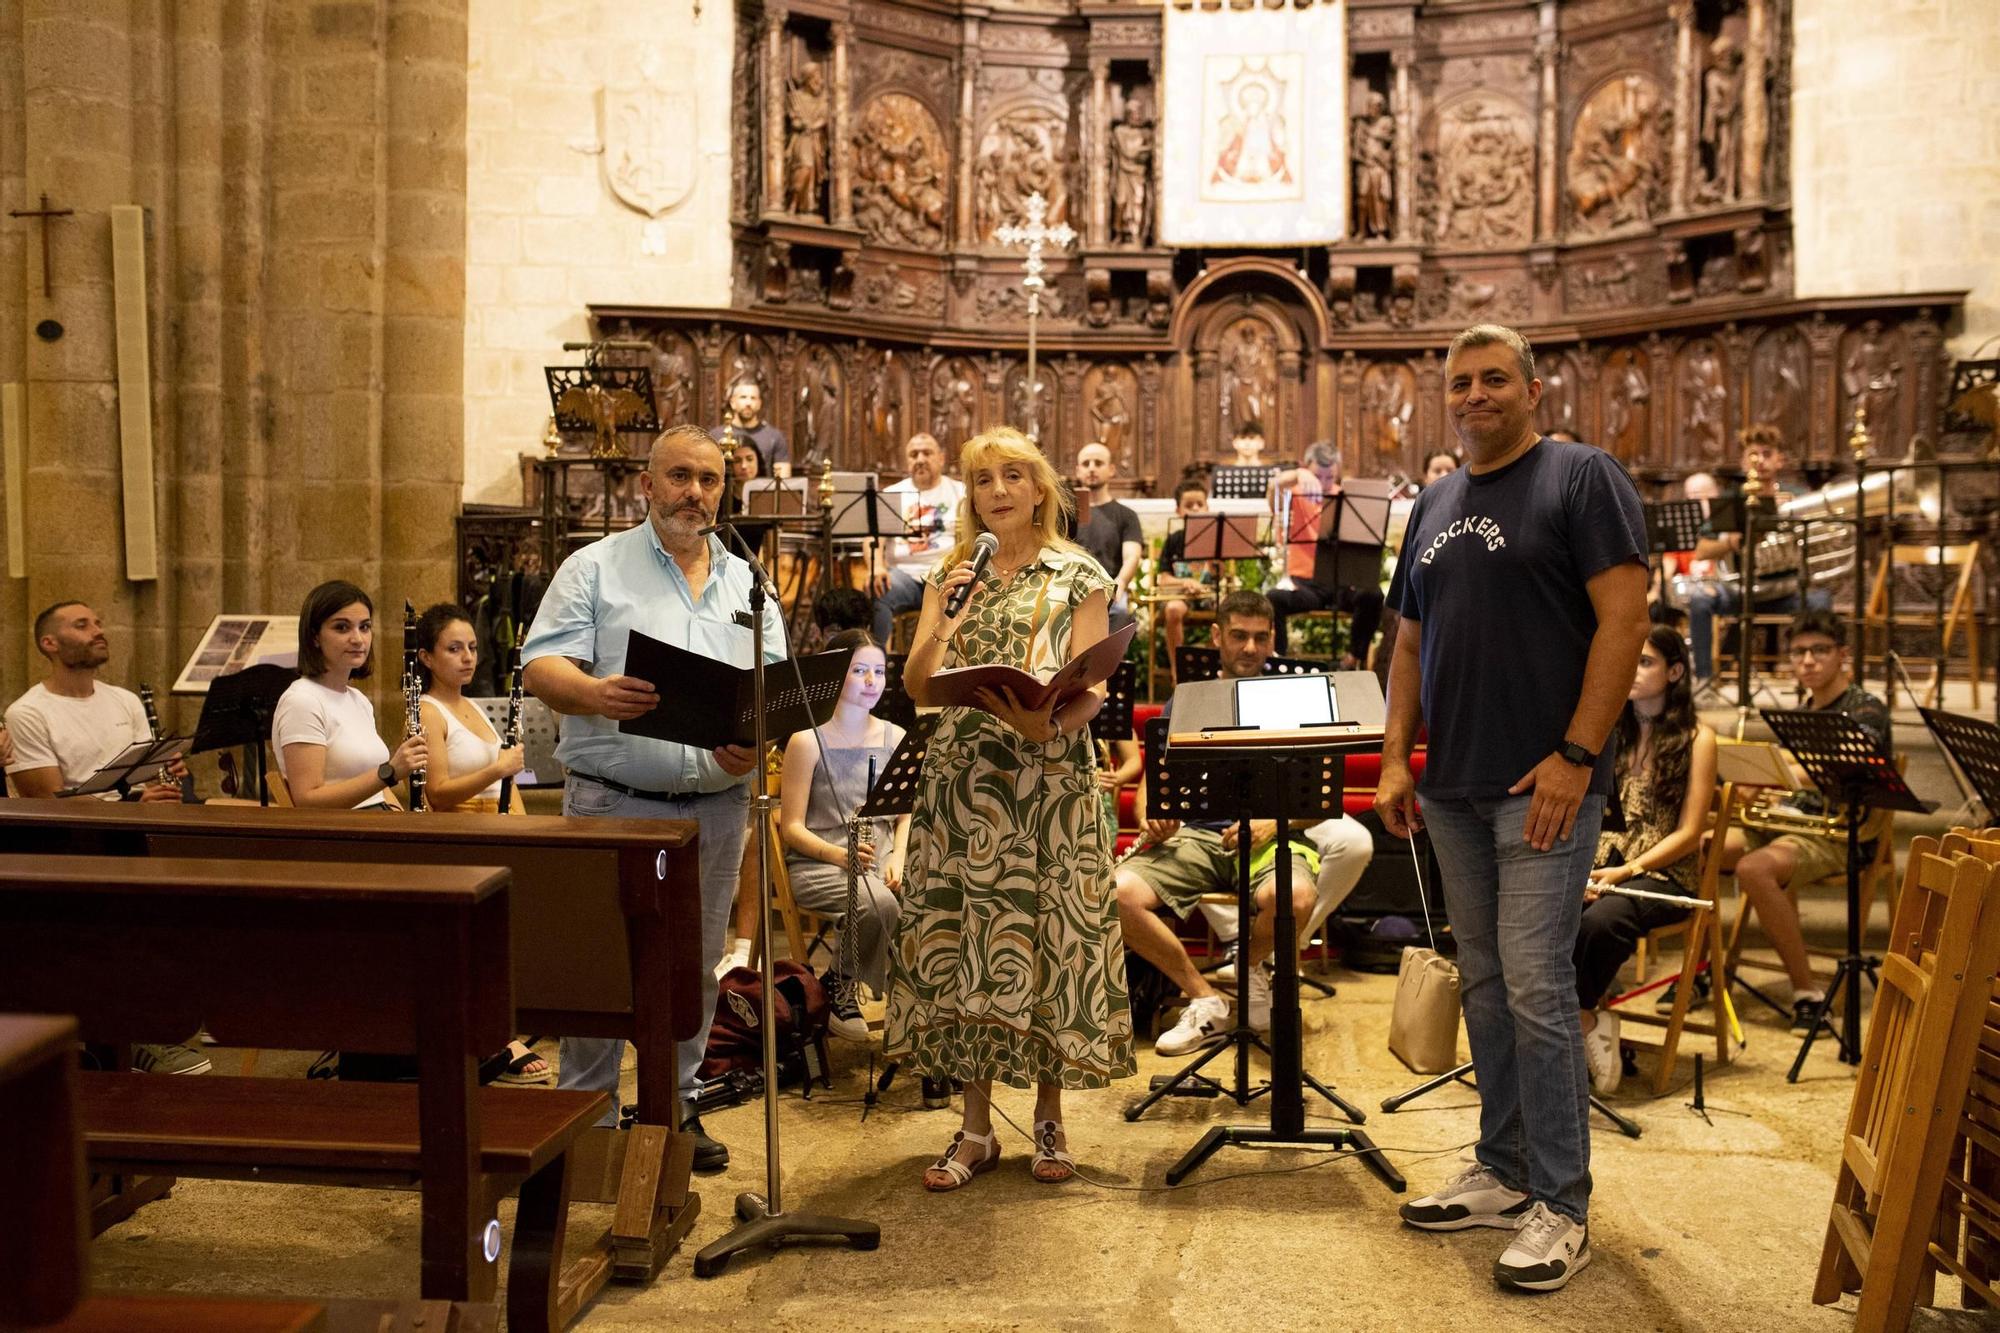 Ensayo en la Concatedral de Santa María en Cáceres